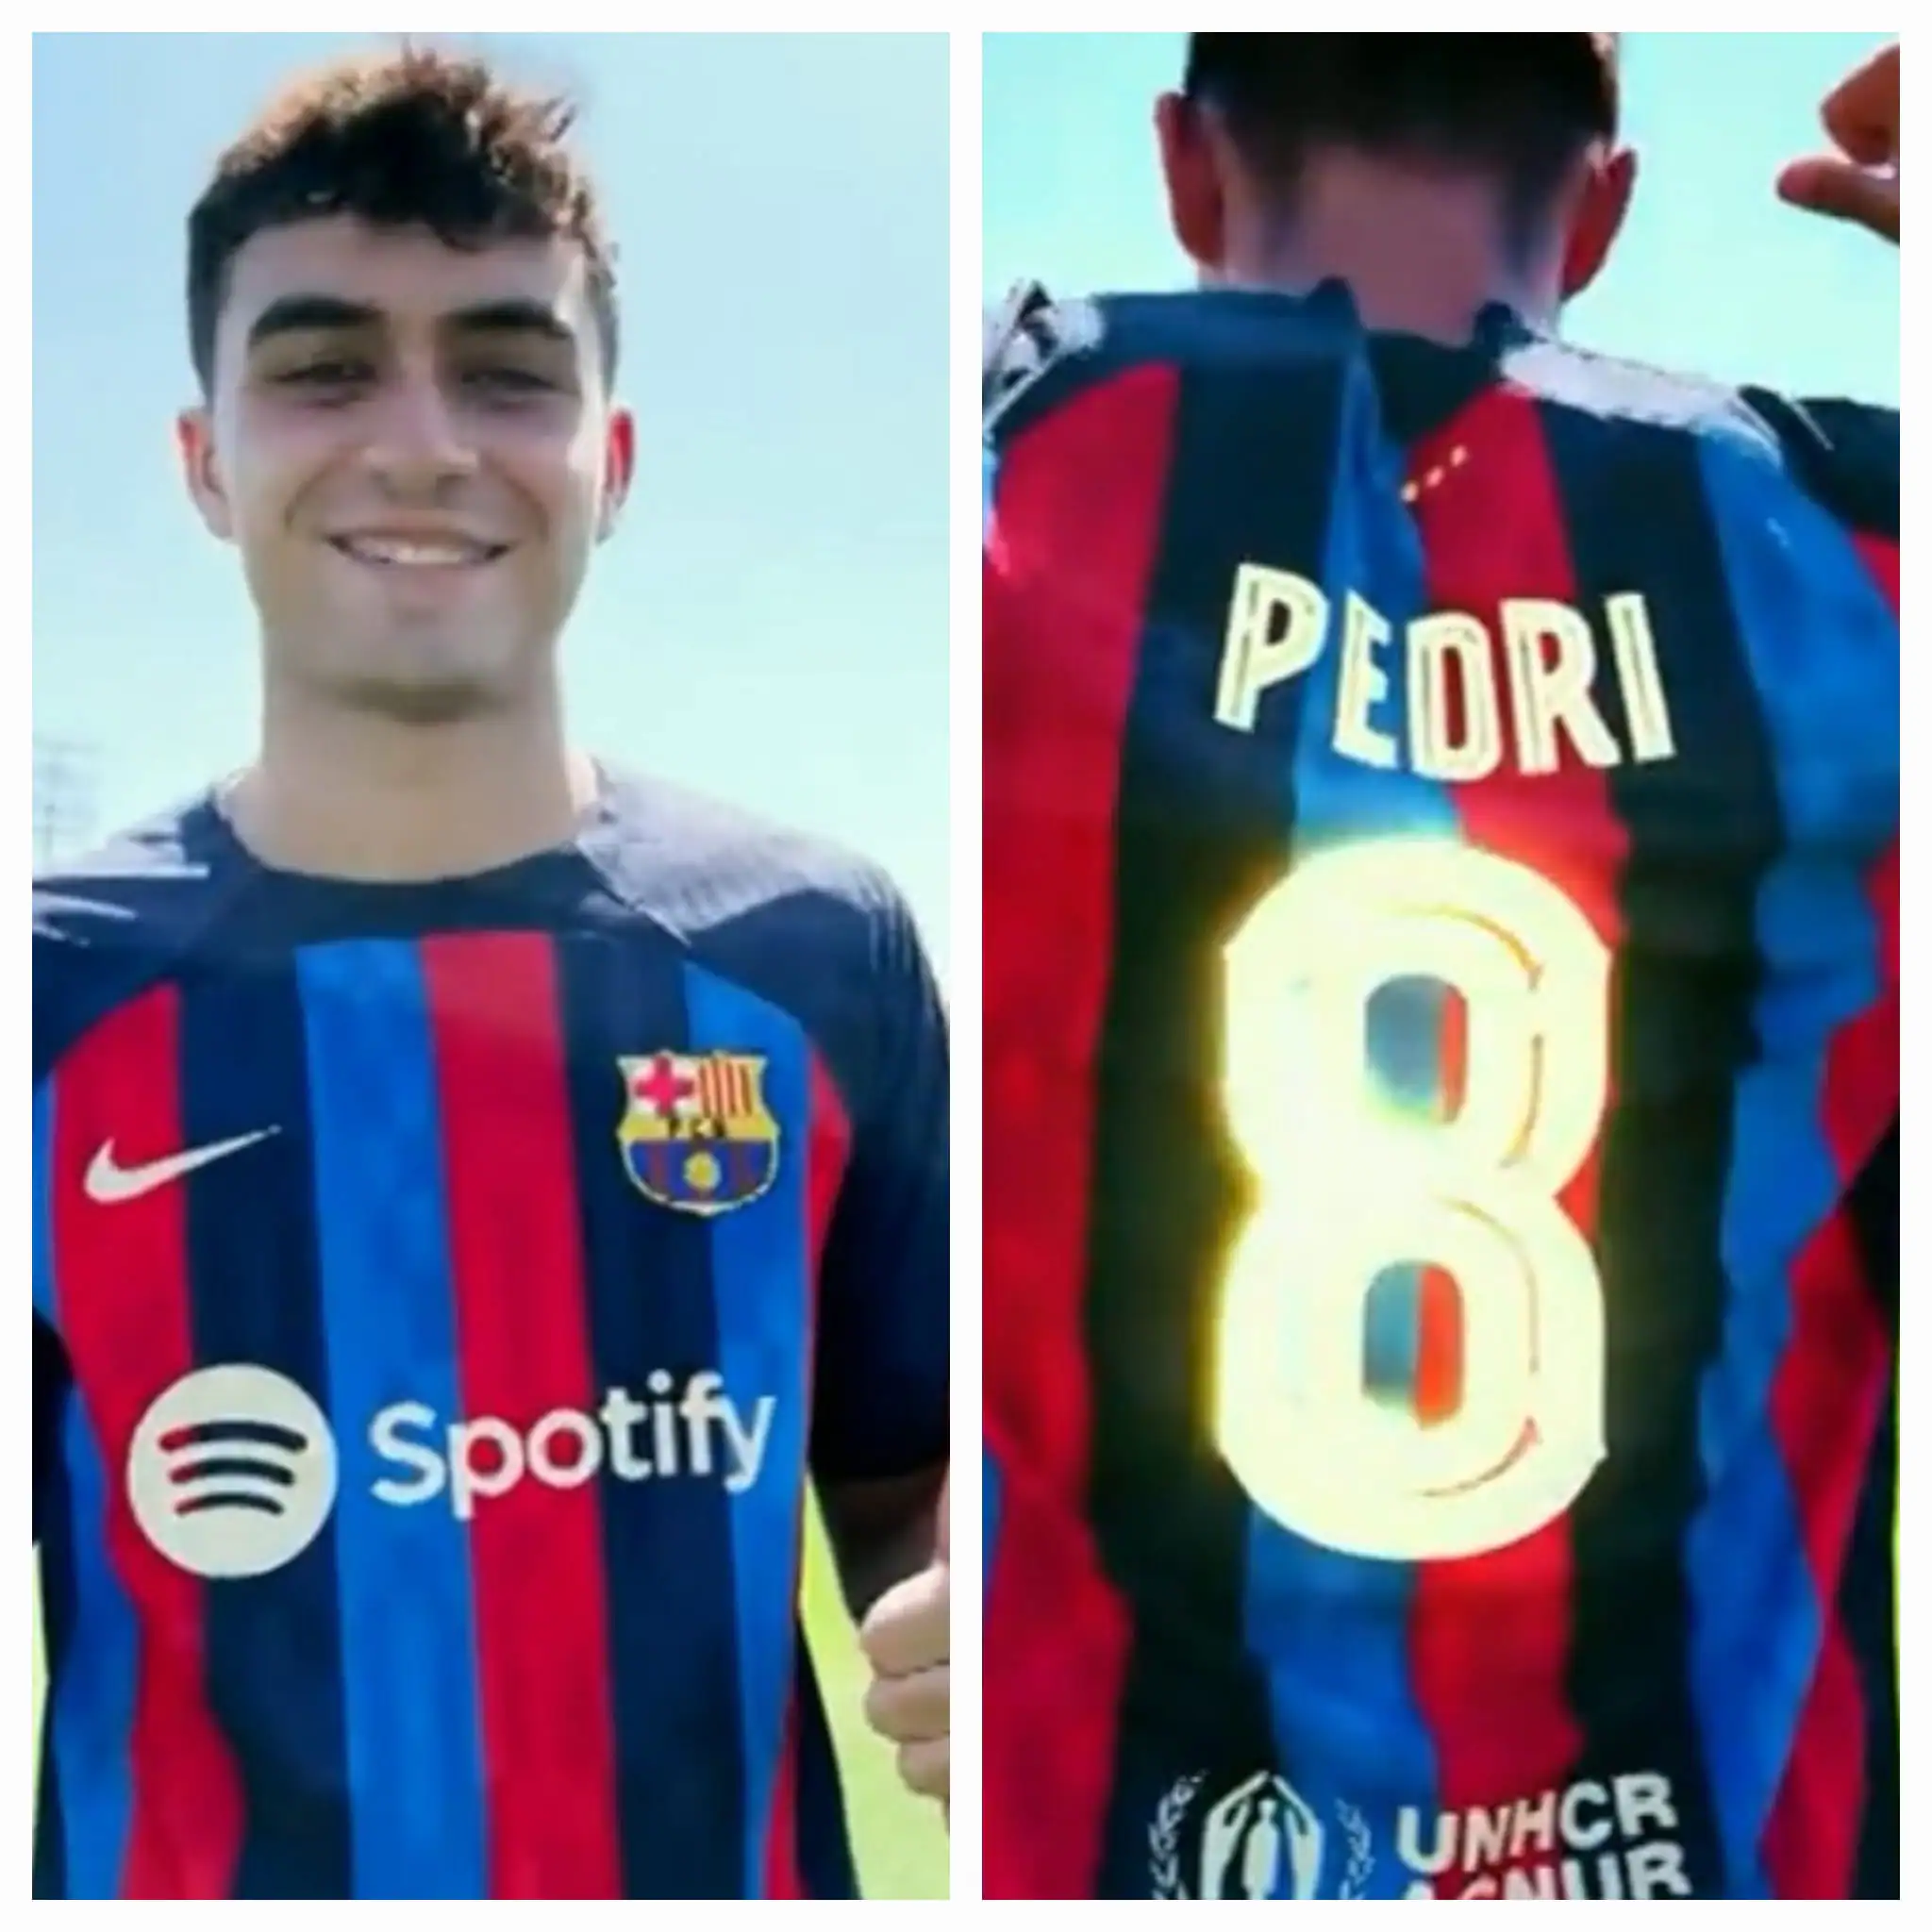 Pedri coge el dorsal 8 de Iniesta en el FC Barcelona